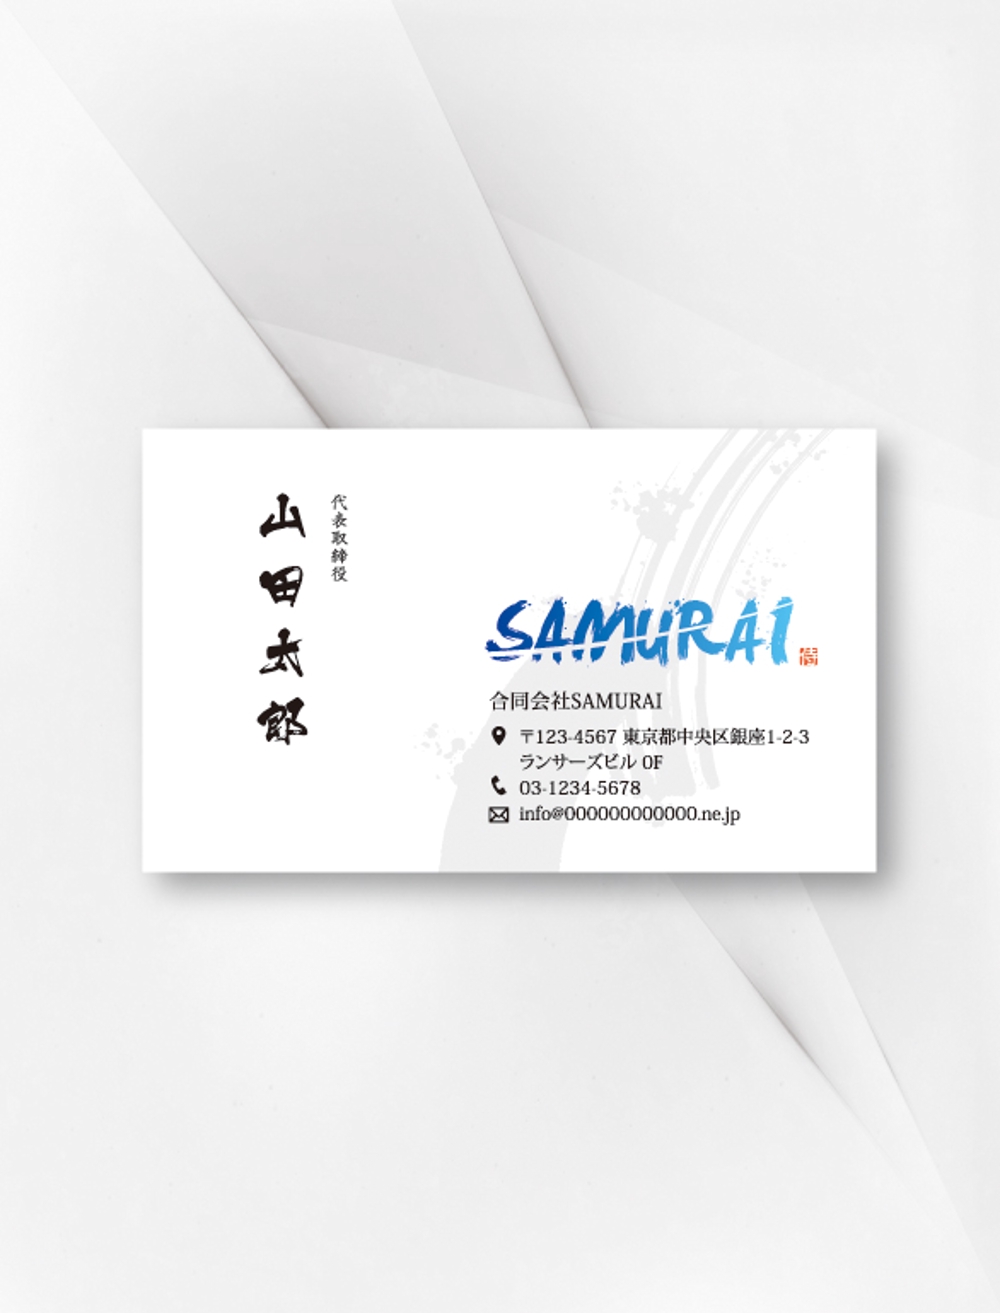 合同会社SAMURAI様_名刺 1.jpg